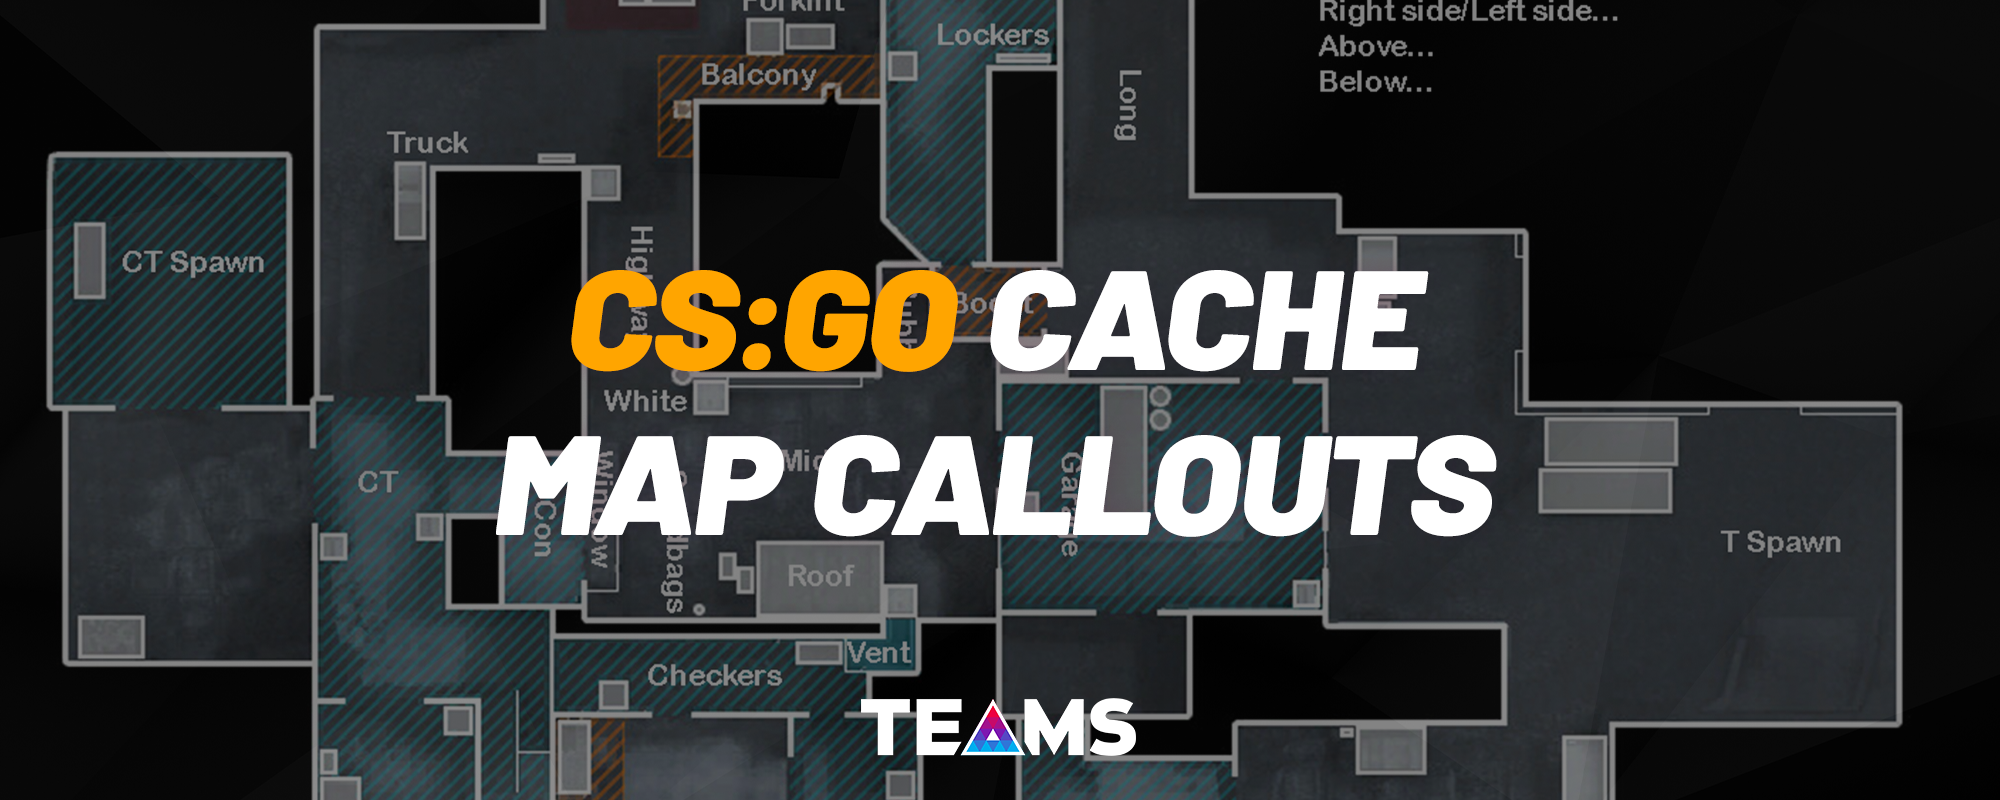 Cache Callouts 2 